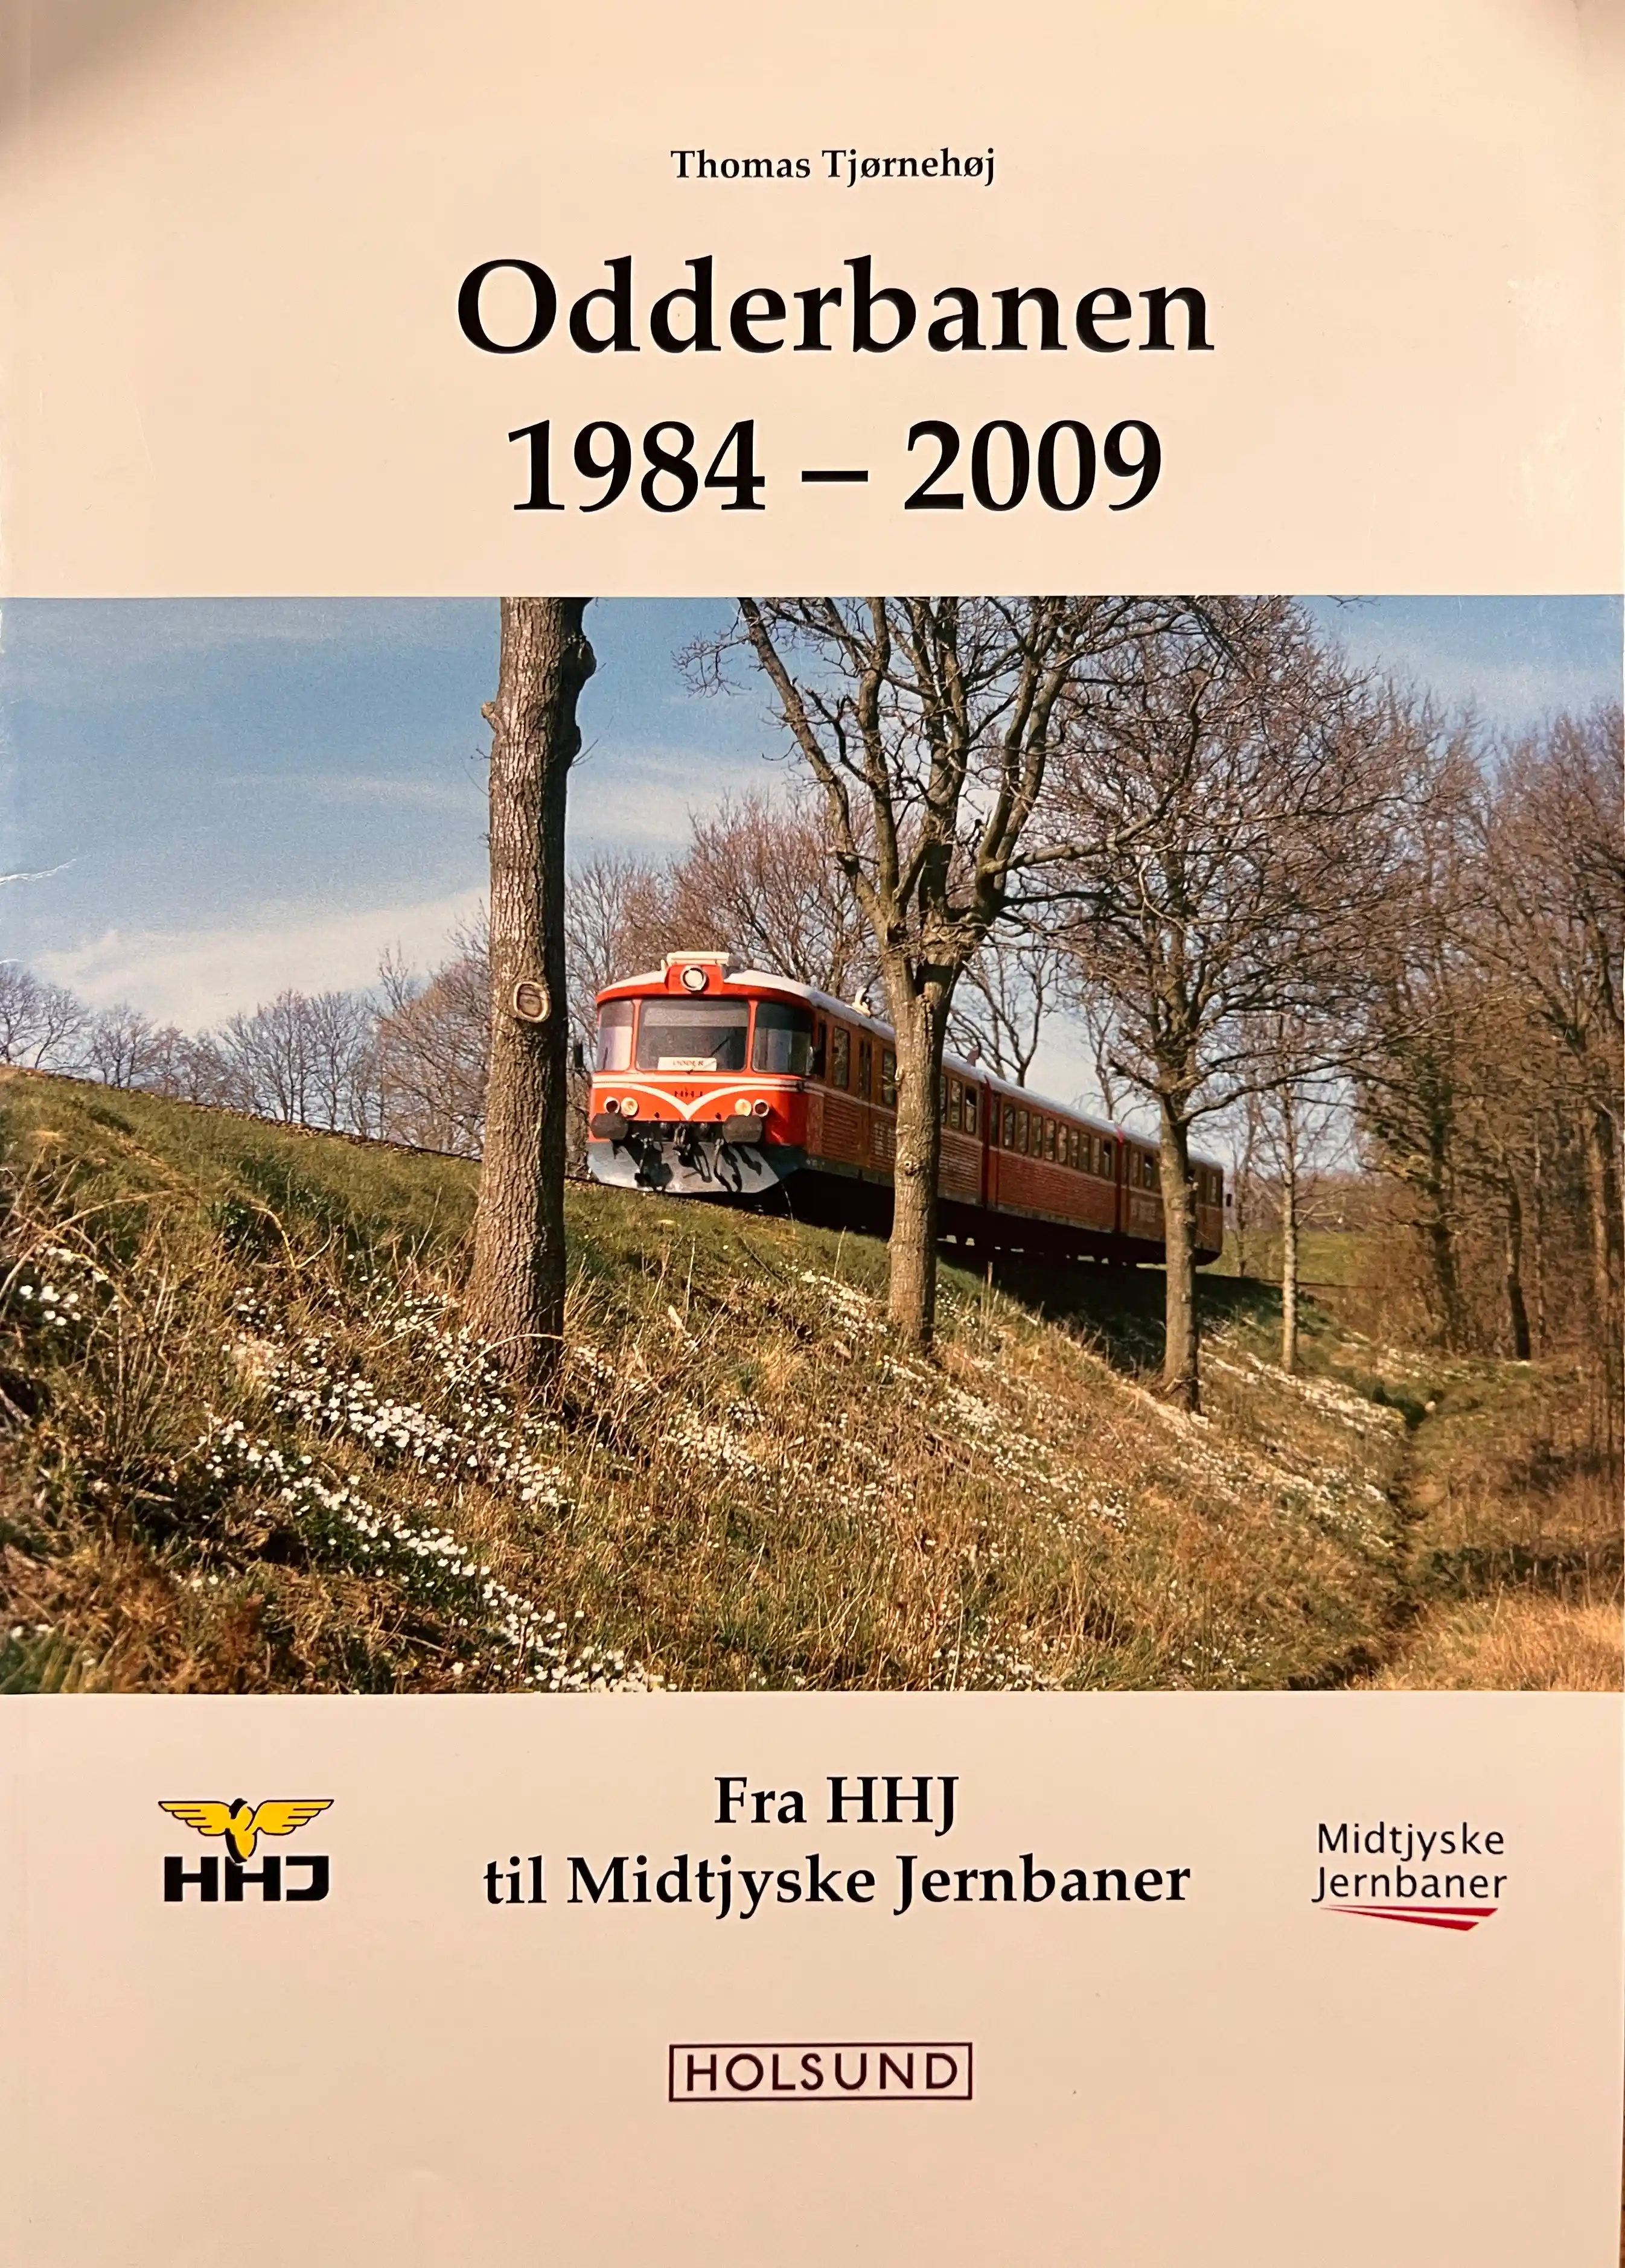 Odderbanen 1984-2009 Fra HHJ til Midtjysk Jernbaner